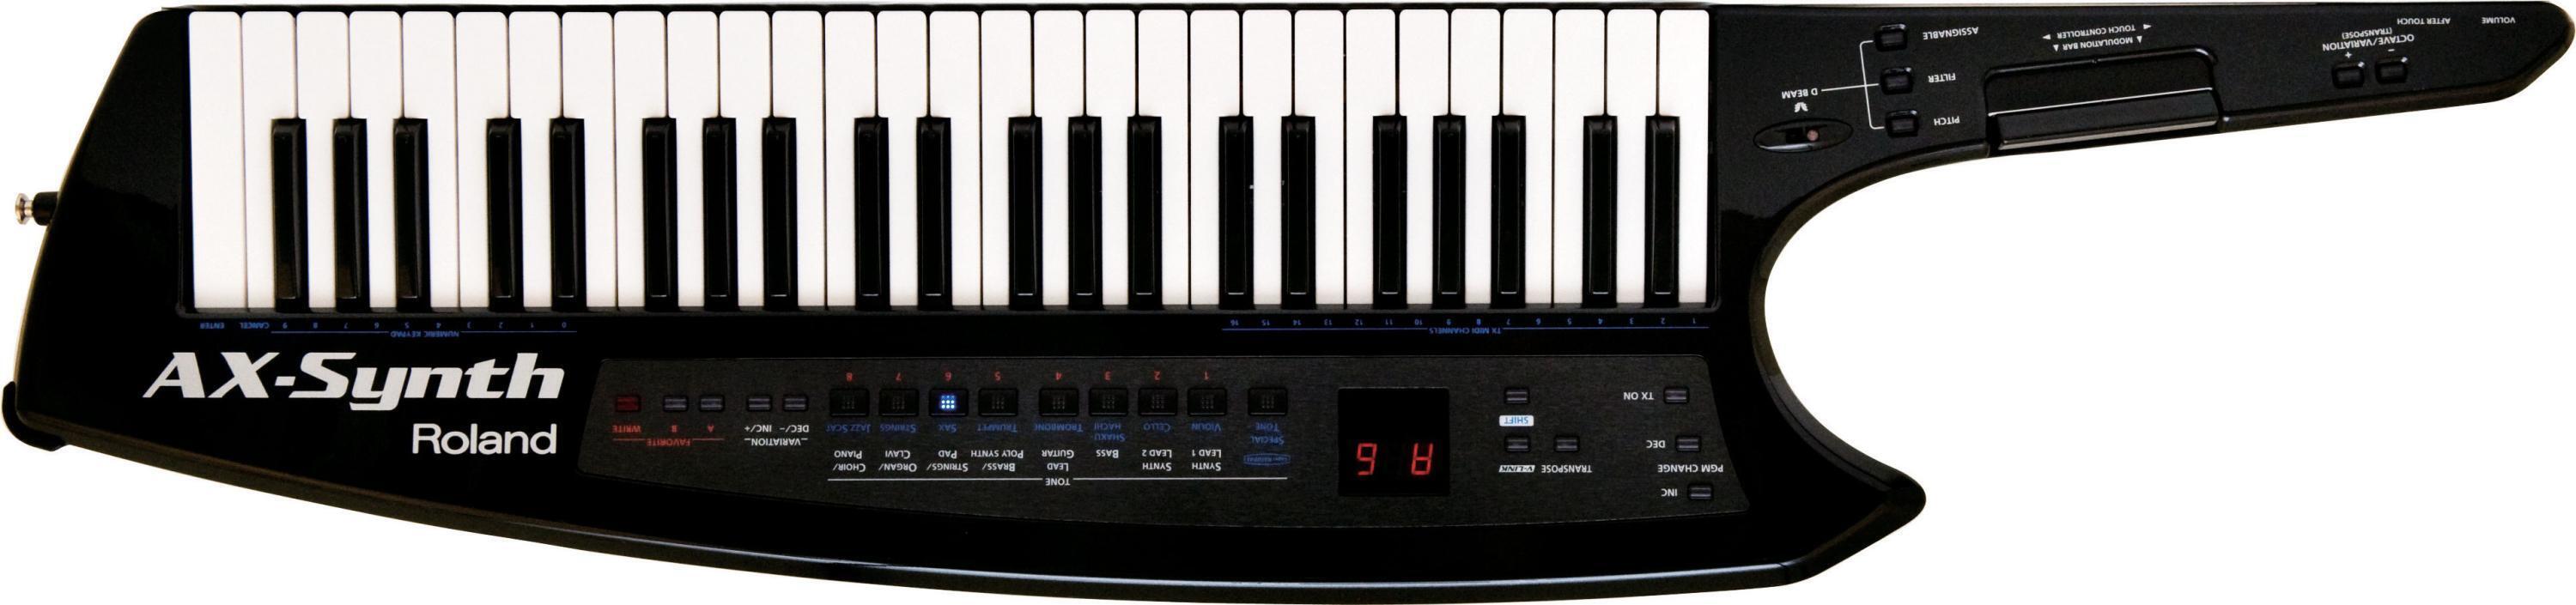 Roland AX-Synth 49-Key Keytar Synthesizer - Black Sparkle